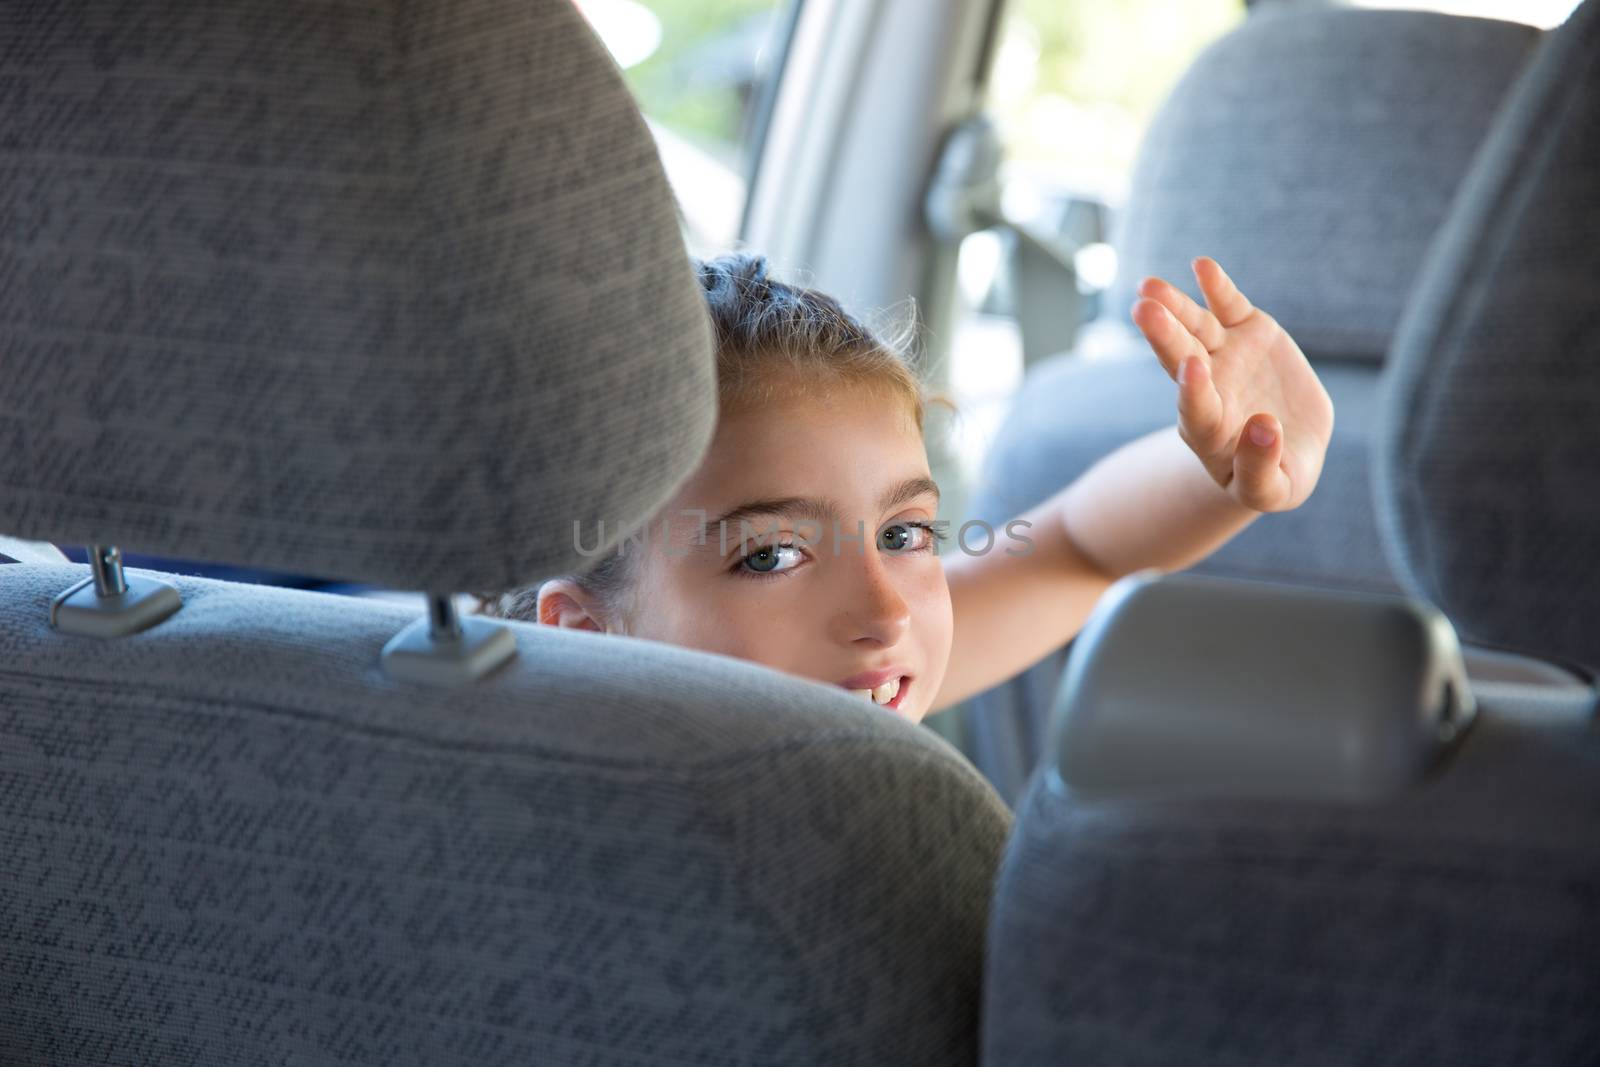 Kid children girl happy greeting gesture hand in car vehicle indoor